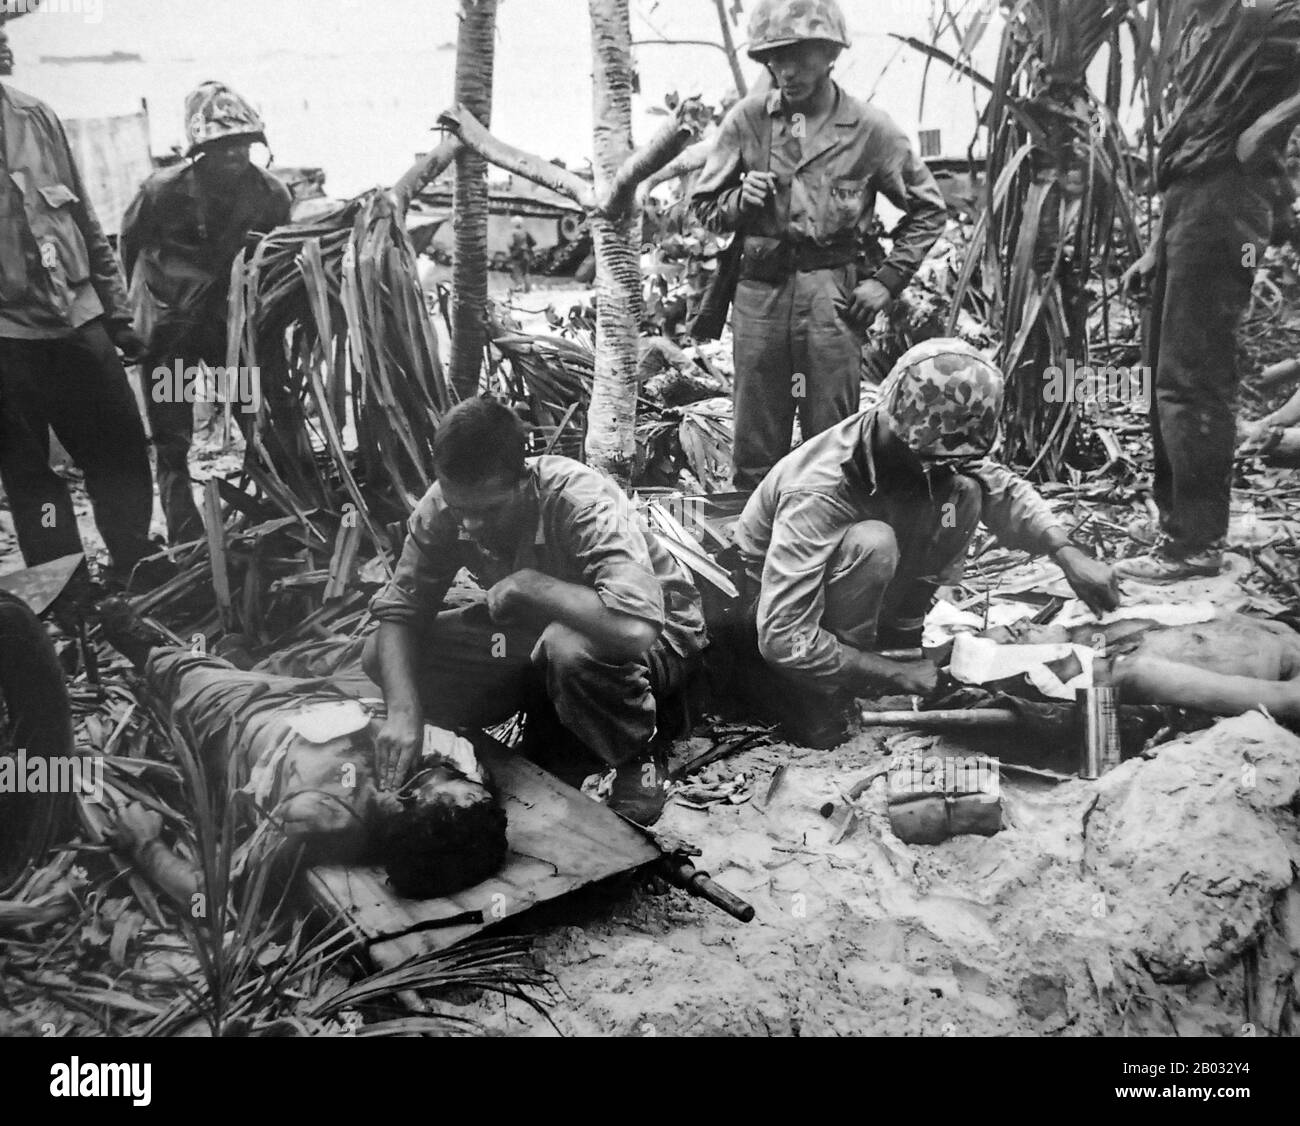 La battaglia di Peleliu fu combattuta tra gli Stati Uniti e l'Impero del Giappone nel Teatro del Pacifico della seconda guerra mondiale, da settembre a novembre 1944 sull'isola di Peleliu (nell'attuale Palau). I Marines degli Stati Uniti della Prima Divisione Marina, e in seguito i soldati della 81st Divisione di fanteria dell'Esercito degli Stati Uniti, combattevano per catturare una airstrip sulla piccola isola corallina. Questa battaglia faceva parte di una campagna offensiva più grande conosciuta come Operazione Forager, che ha funzionato da giugno a novembre 1944 nel Teatro delle operazioni del Pacifico. Foto Stock